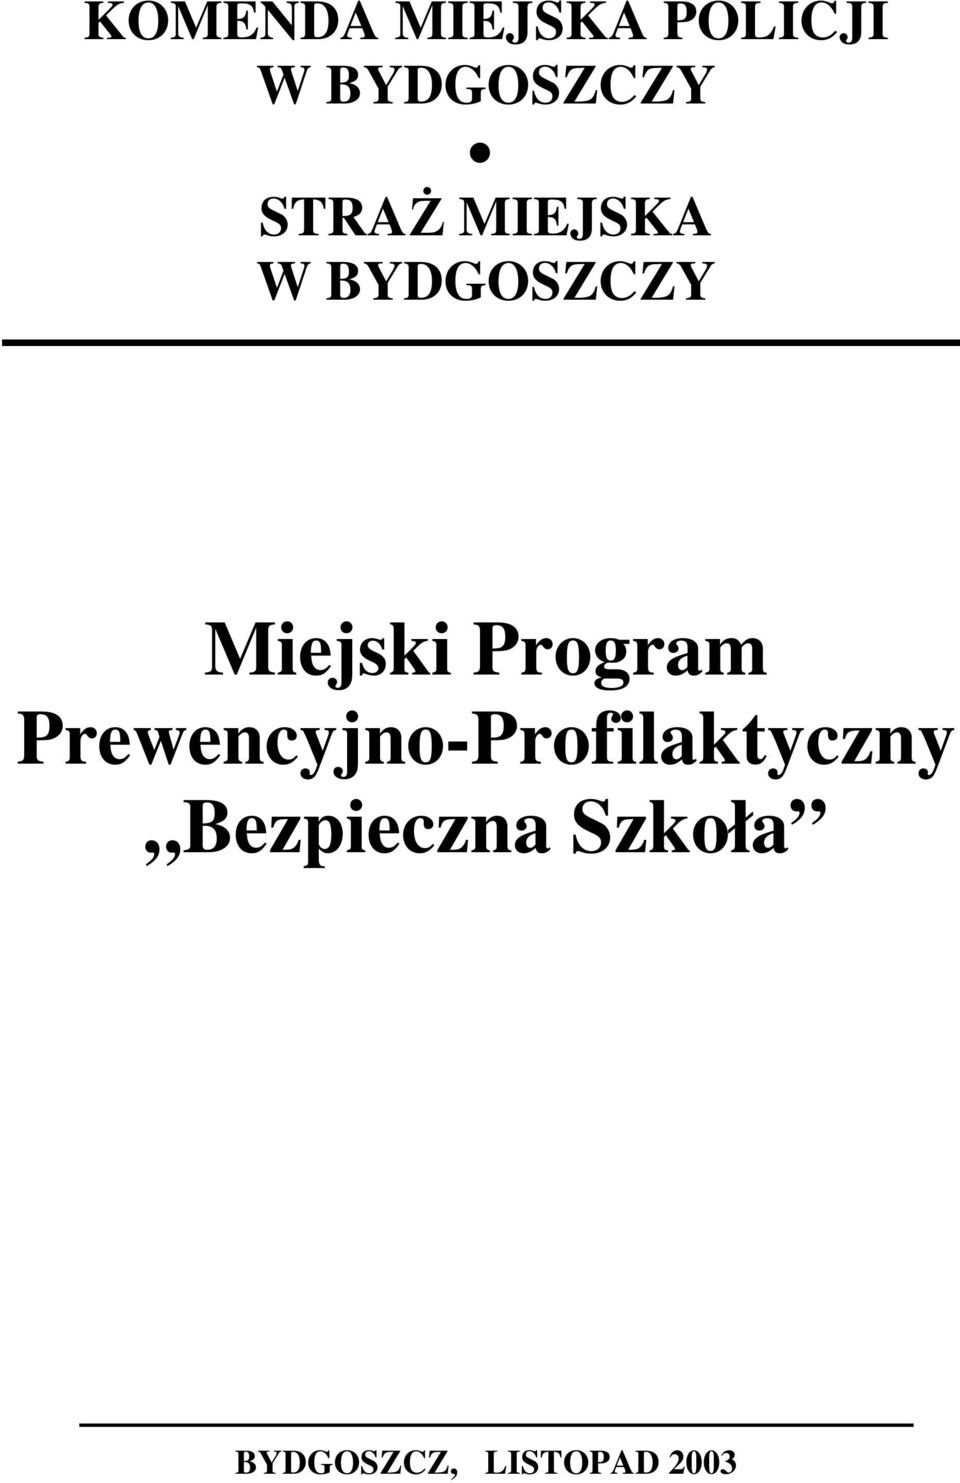 Program Prewencyjno-Profilaktyczny